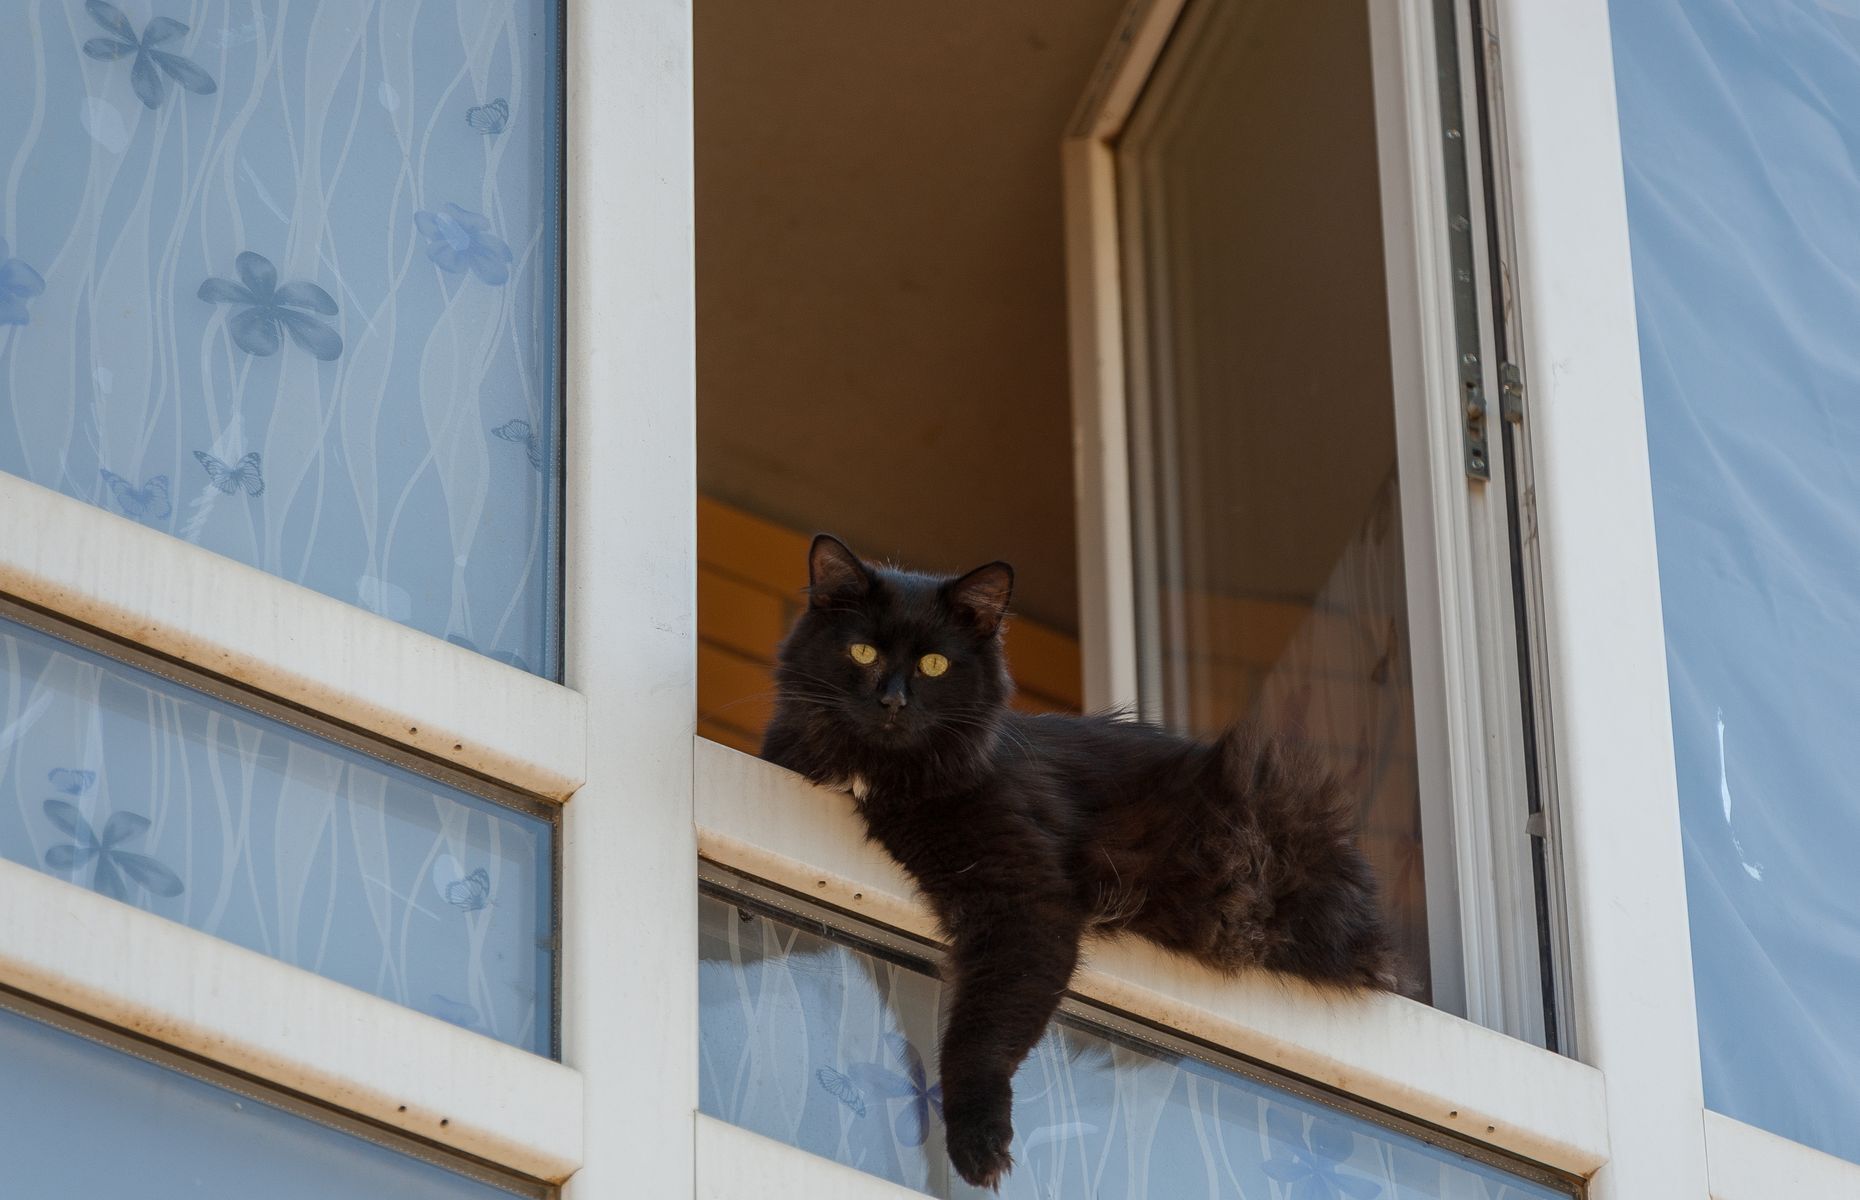 <p>Les chats adorent se prélasser près des fenêtres. Mais si vous habitez en hauteur, assurez-vous qu’il y a des moustiquaires aux fenêtres, <a href="https://www.fidanimo.com/article/fenetres-ouvertes-attention-danger-chat">afin de prévenir tout risque de chute</a>. Ce n’est pas parce que le chat est habile qu’il est à l’abri des fractures! De même, sécurisez le tour de votre balcon pour éviter un fâcheux accident.</p>